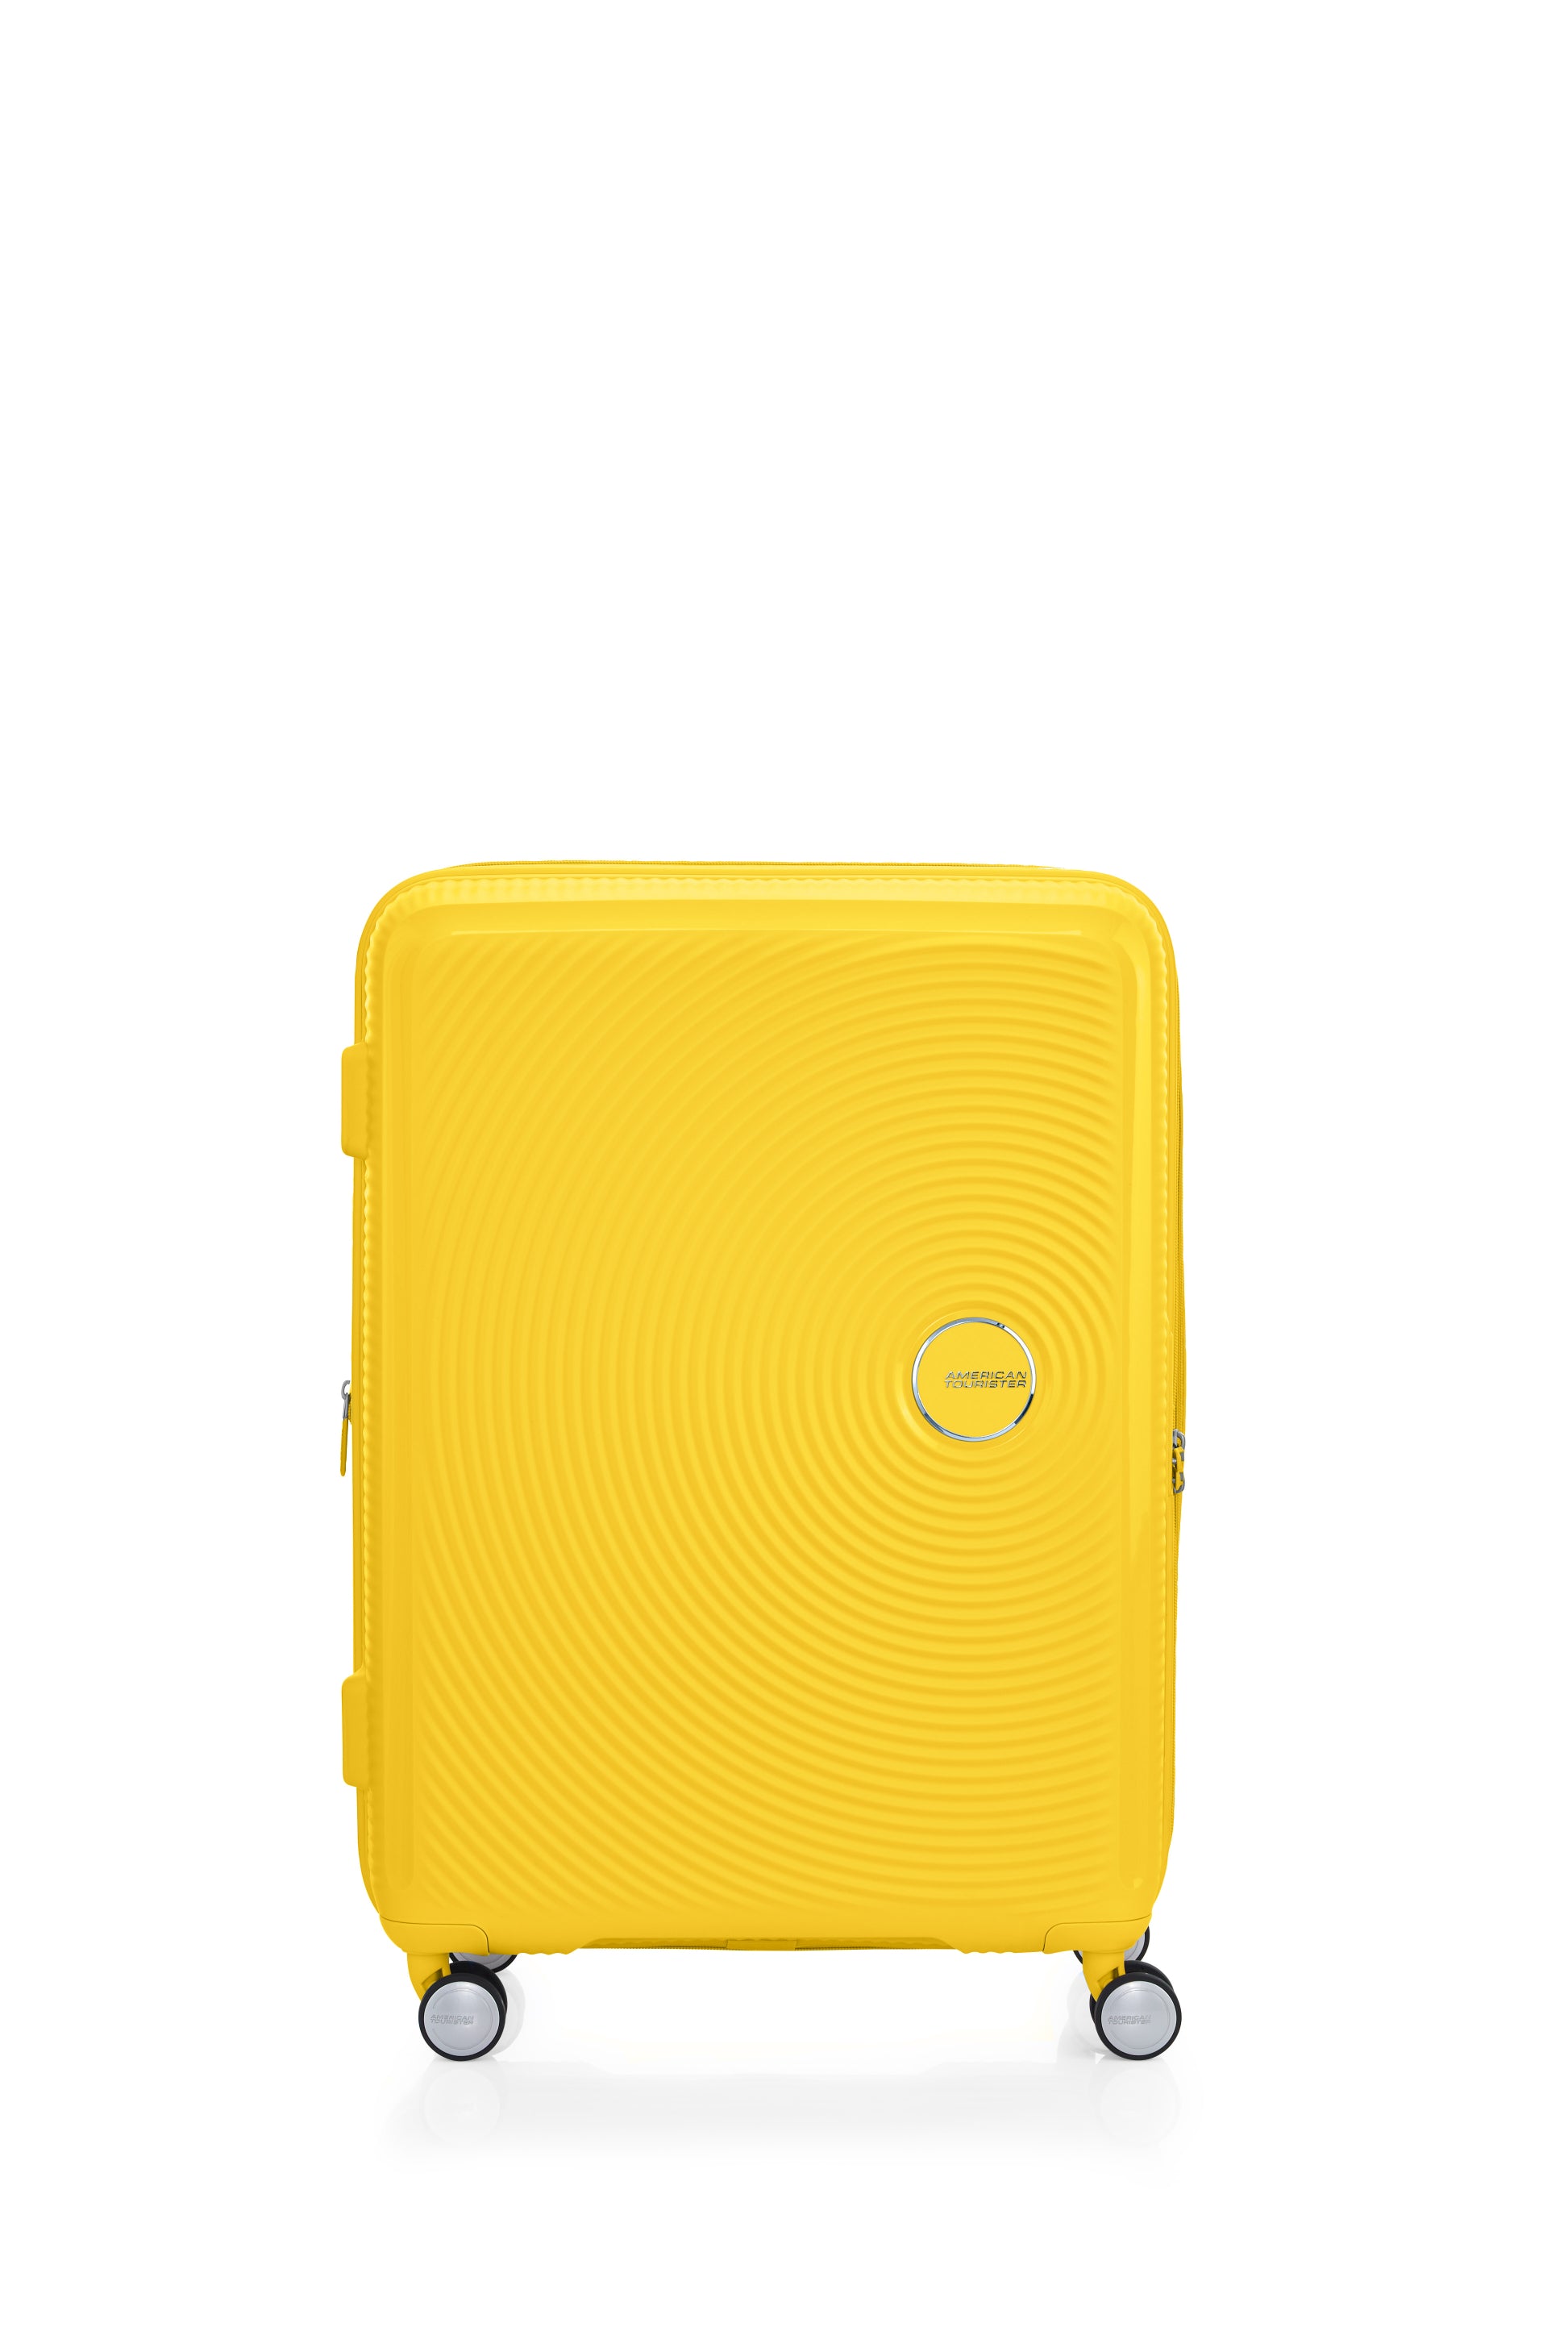 American Tourister - Curio 2.0 69cm Medium Suitcase - Golden Yellow-5